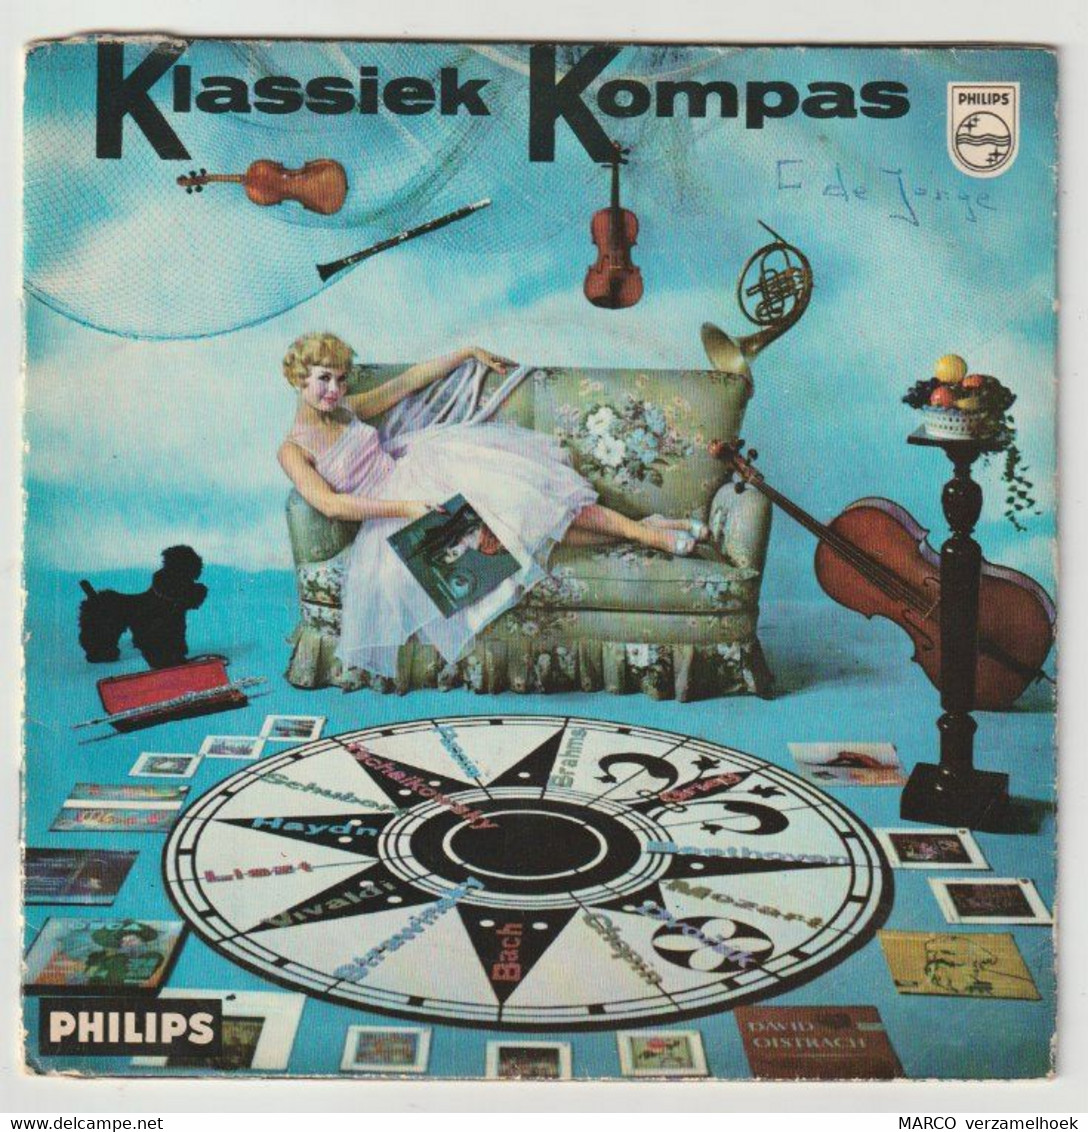 45T Single Klassiek Kompas 1959 PHILIPS Minigroove 099 793 - Opere